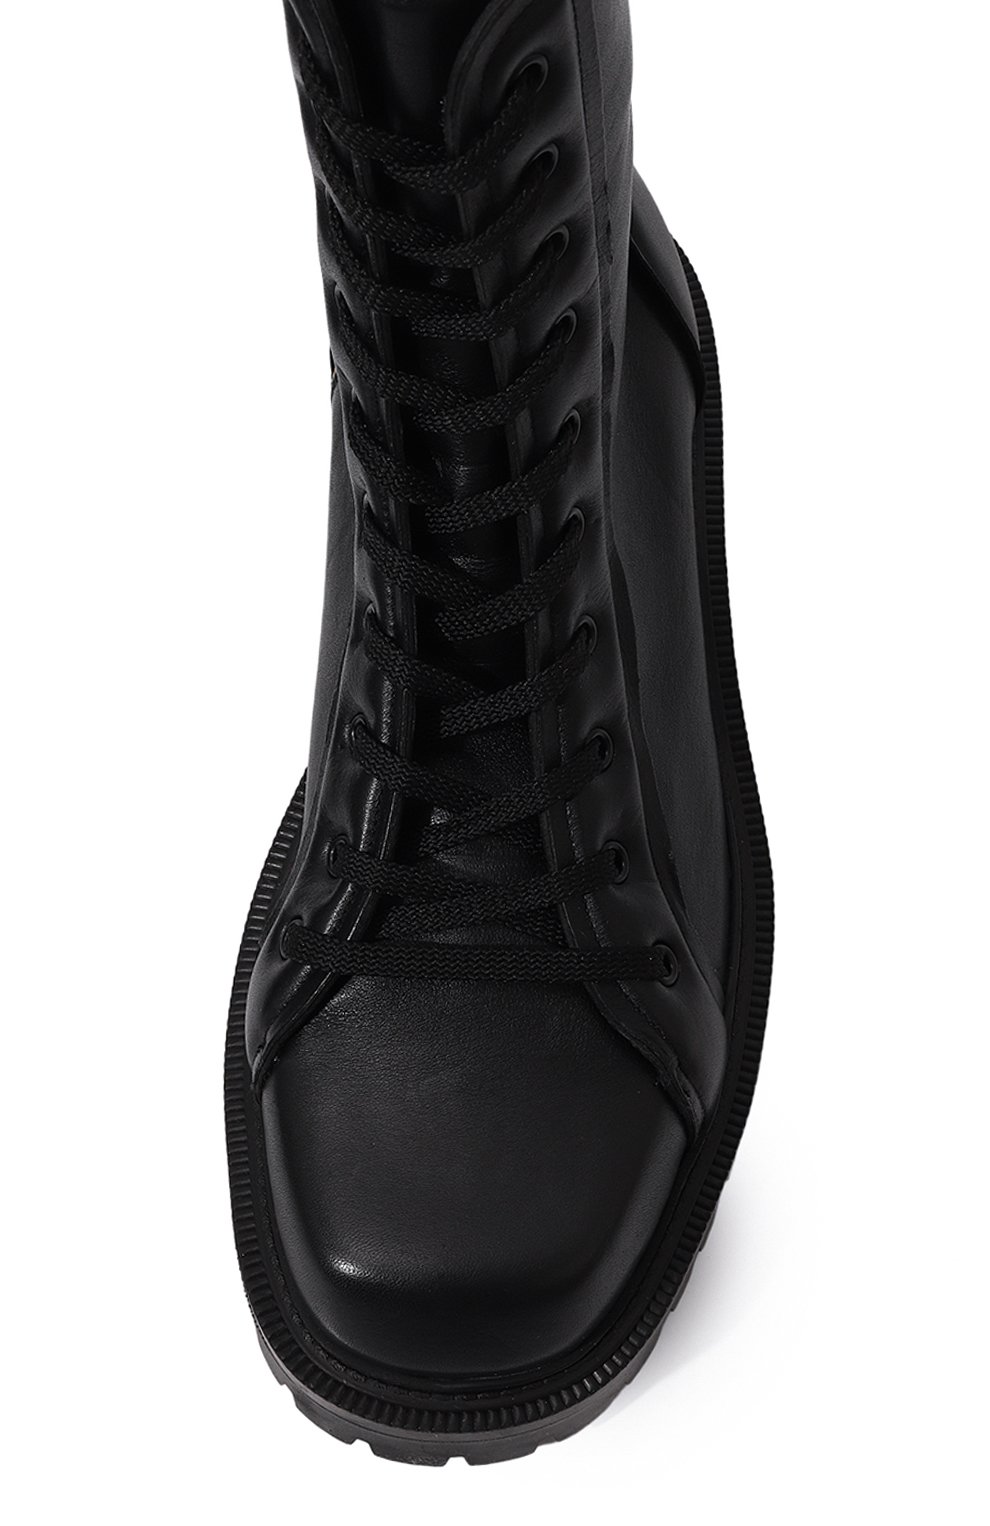 Мужские черные кожаные ботинки VIC MATIE купить в интернет-магазине ЦУМ,арт. 1D8158U_B32B070101